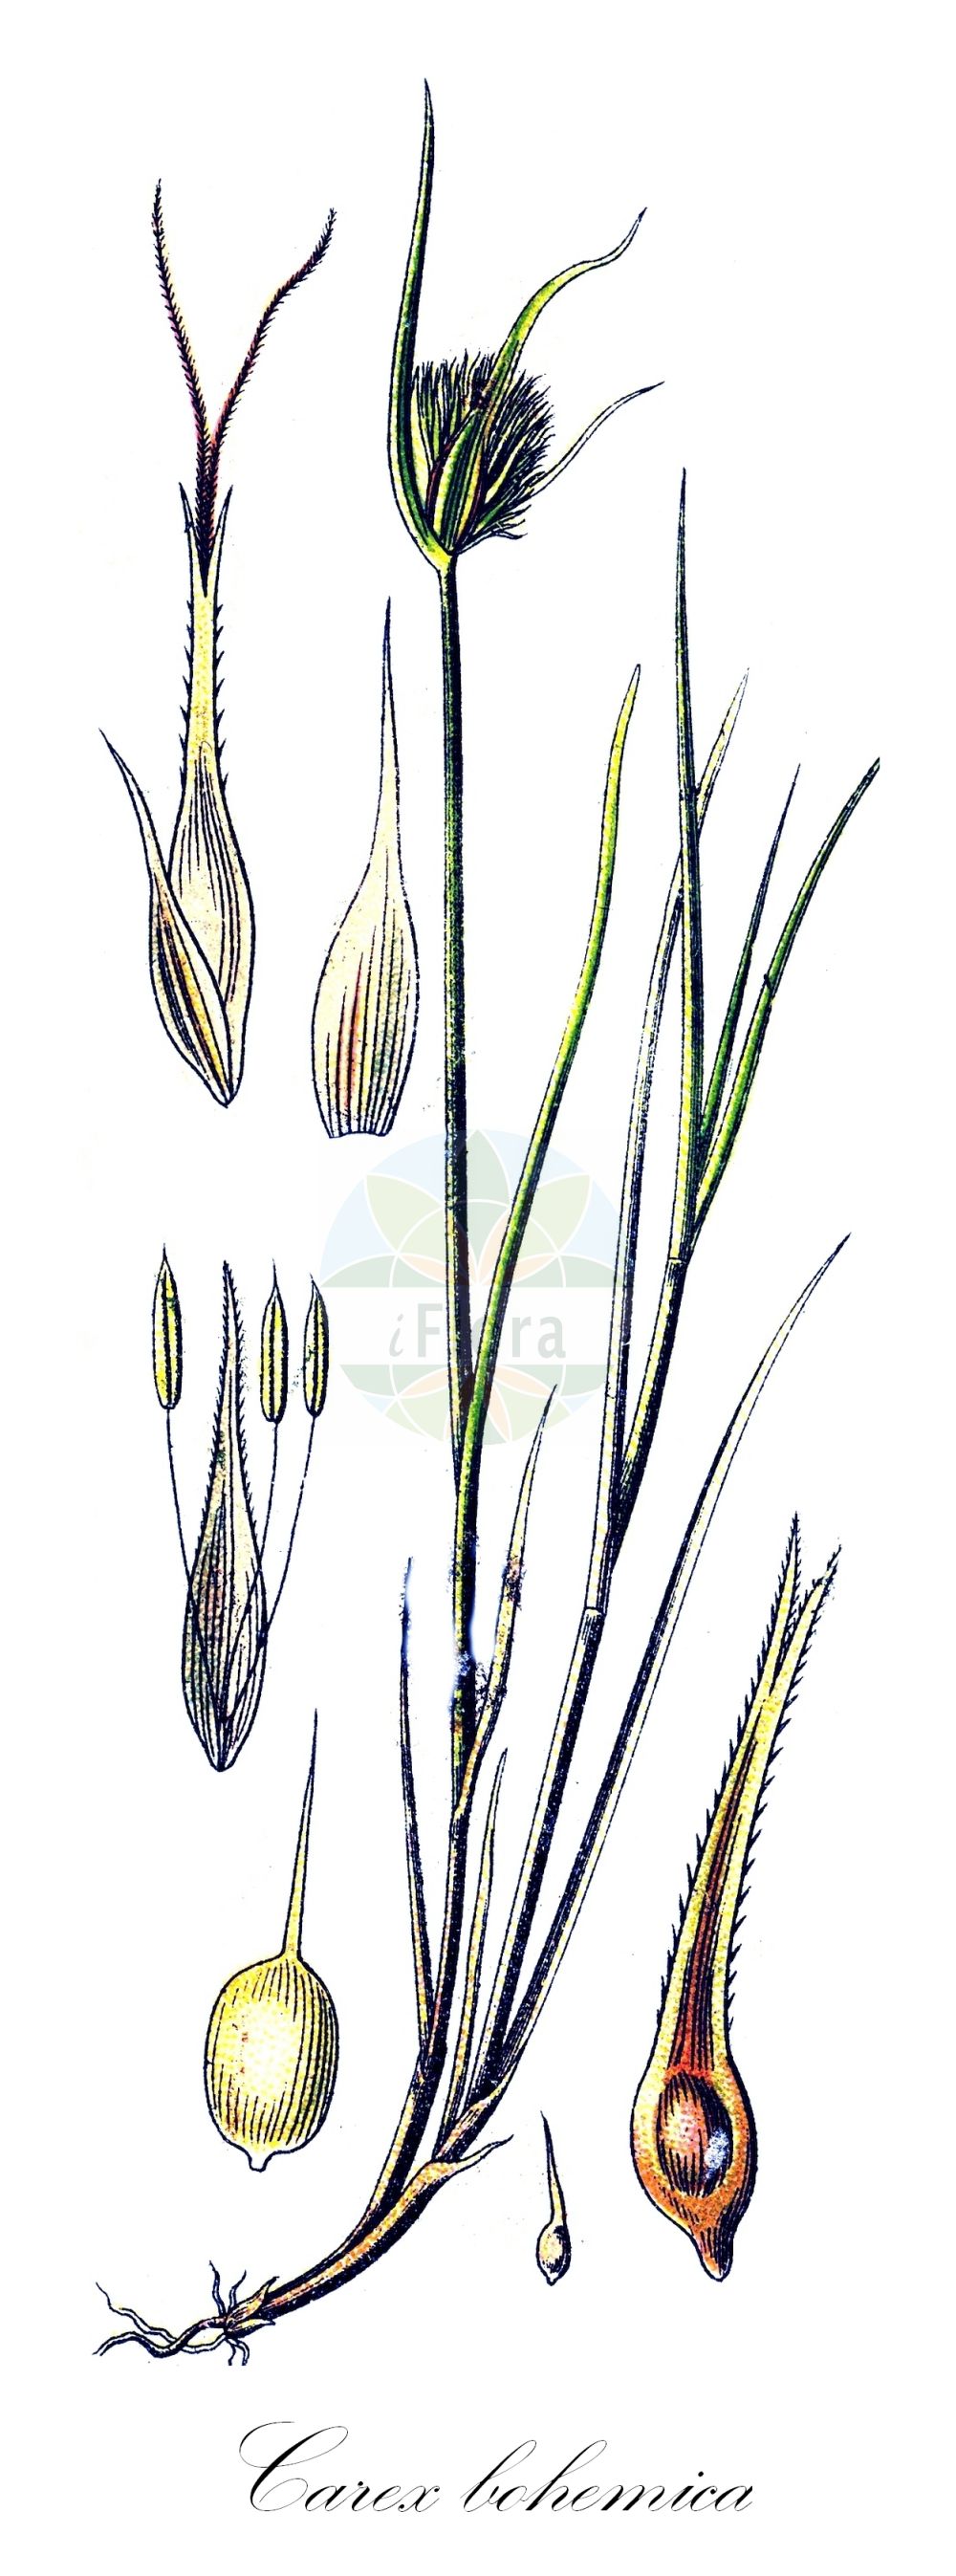 Historische Abbildung von Carex bohemica (Zypergras-Segge - Bohemian Sedge). Das Bild zeigt Blatt, Bluete, Frucht und Same. ---- Historical Drawing of Carex bohemica (Zypergras-Segge - Bohemian Sedge). The image is showing leaf, flower, fruit and seed.(Carex bohemica,Zypergras-Segge,Bohemian Sedge,Carex bohemica,Carex cyperoides,Vignea bohemica,Zypergras-Segge,Carex cyperoides L.,Bohemian Sedge,Carex,Segge,Sedge,Cyperaceae,Sauergräser,Sedge family,Blatt,Bluete,Frucht,Same,leaf,flower,fruit,seed,Sturm (1796f))